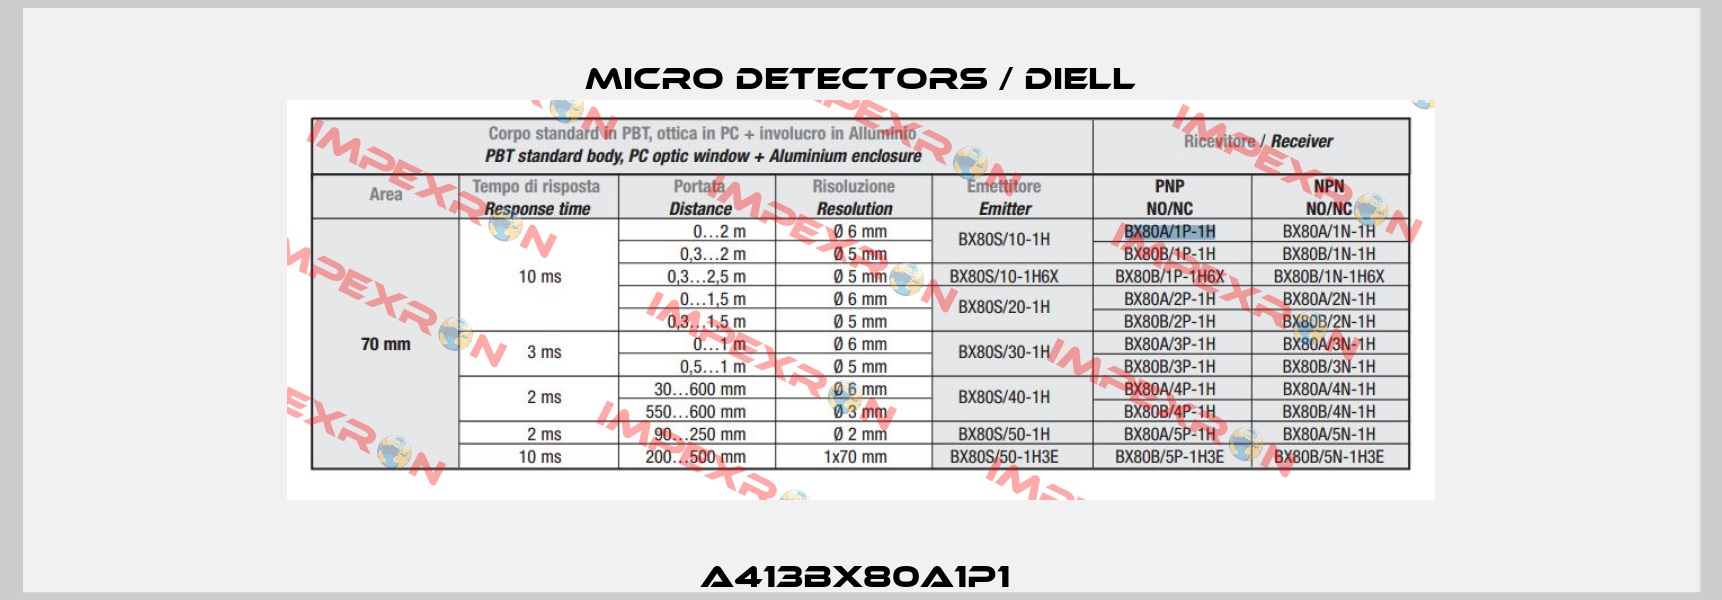 A413BX80A1P1  Micro Detectors / Diell